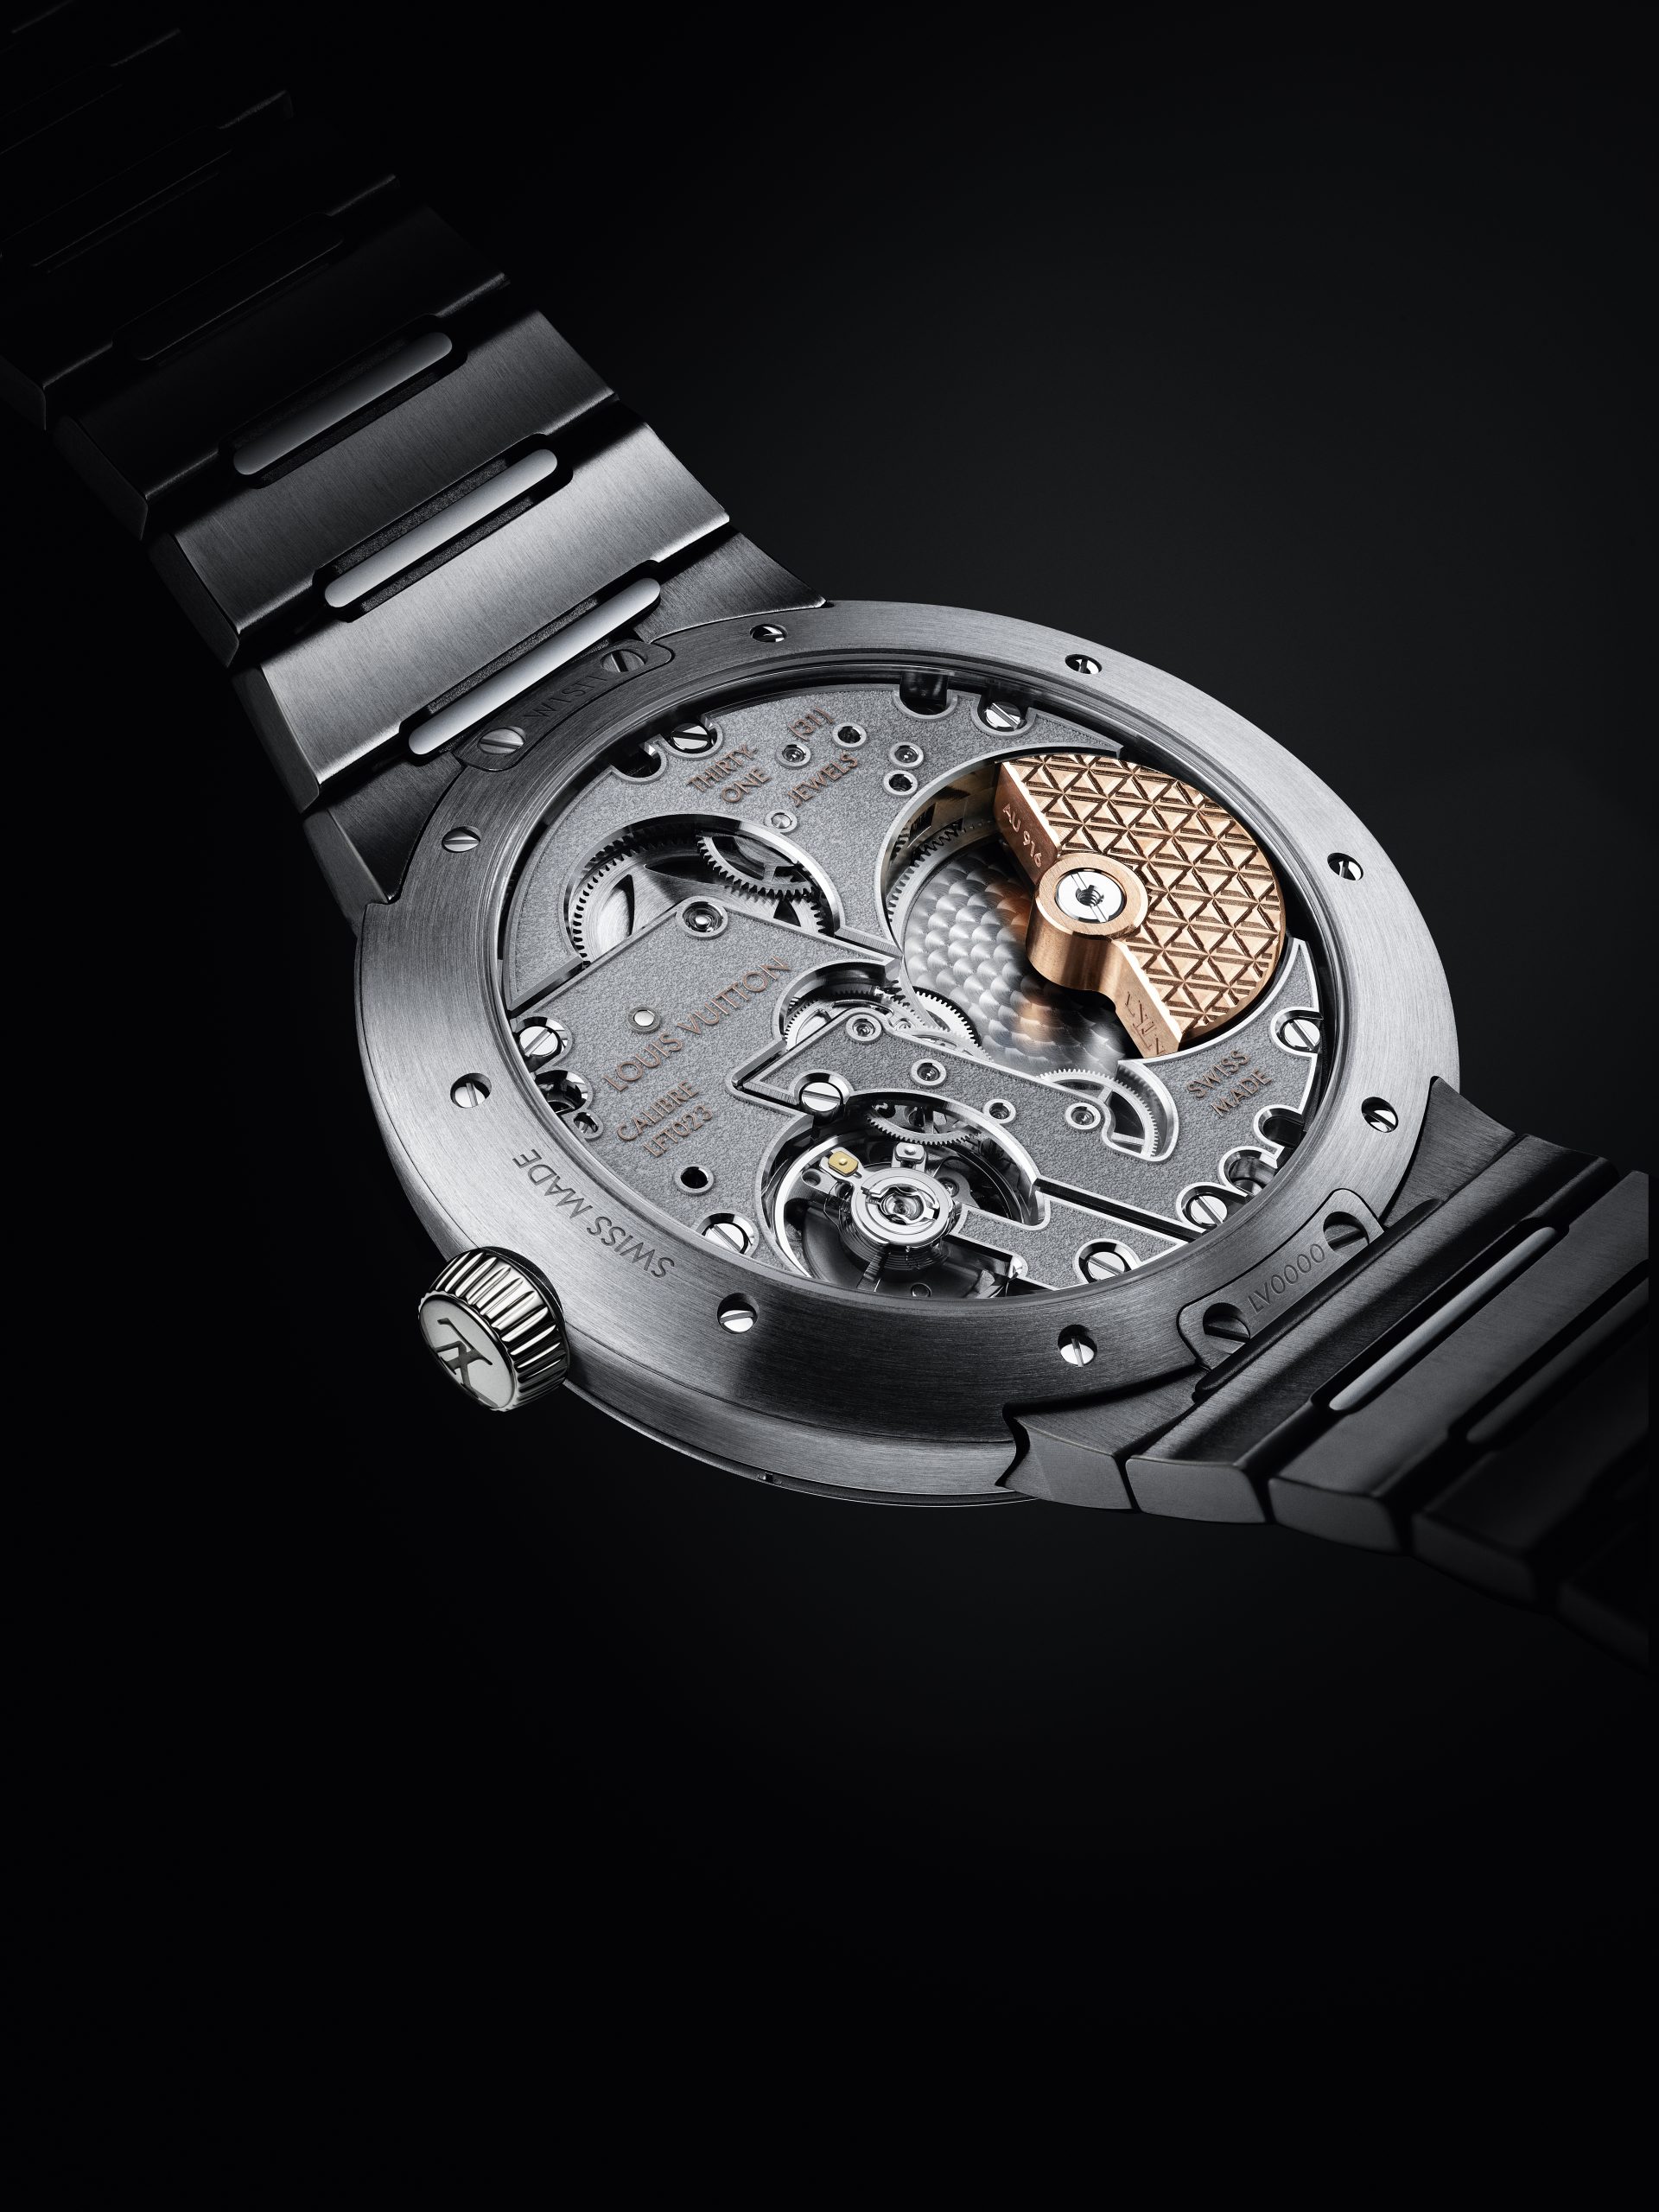 Louis Vuitton apresenta novo relógio Tambour